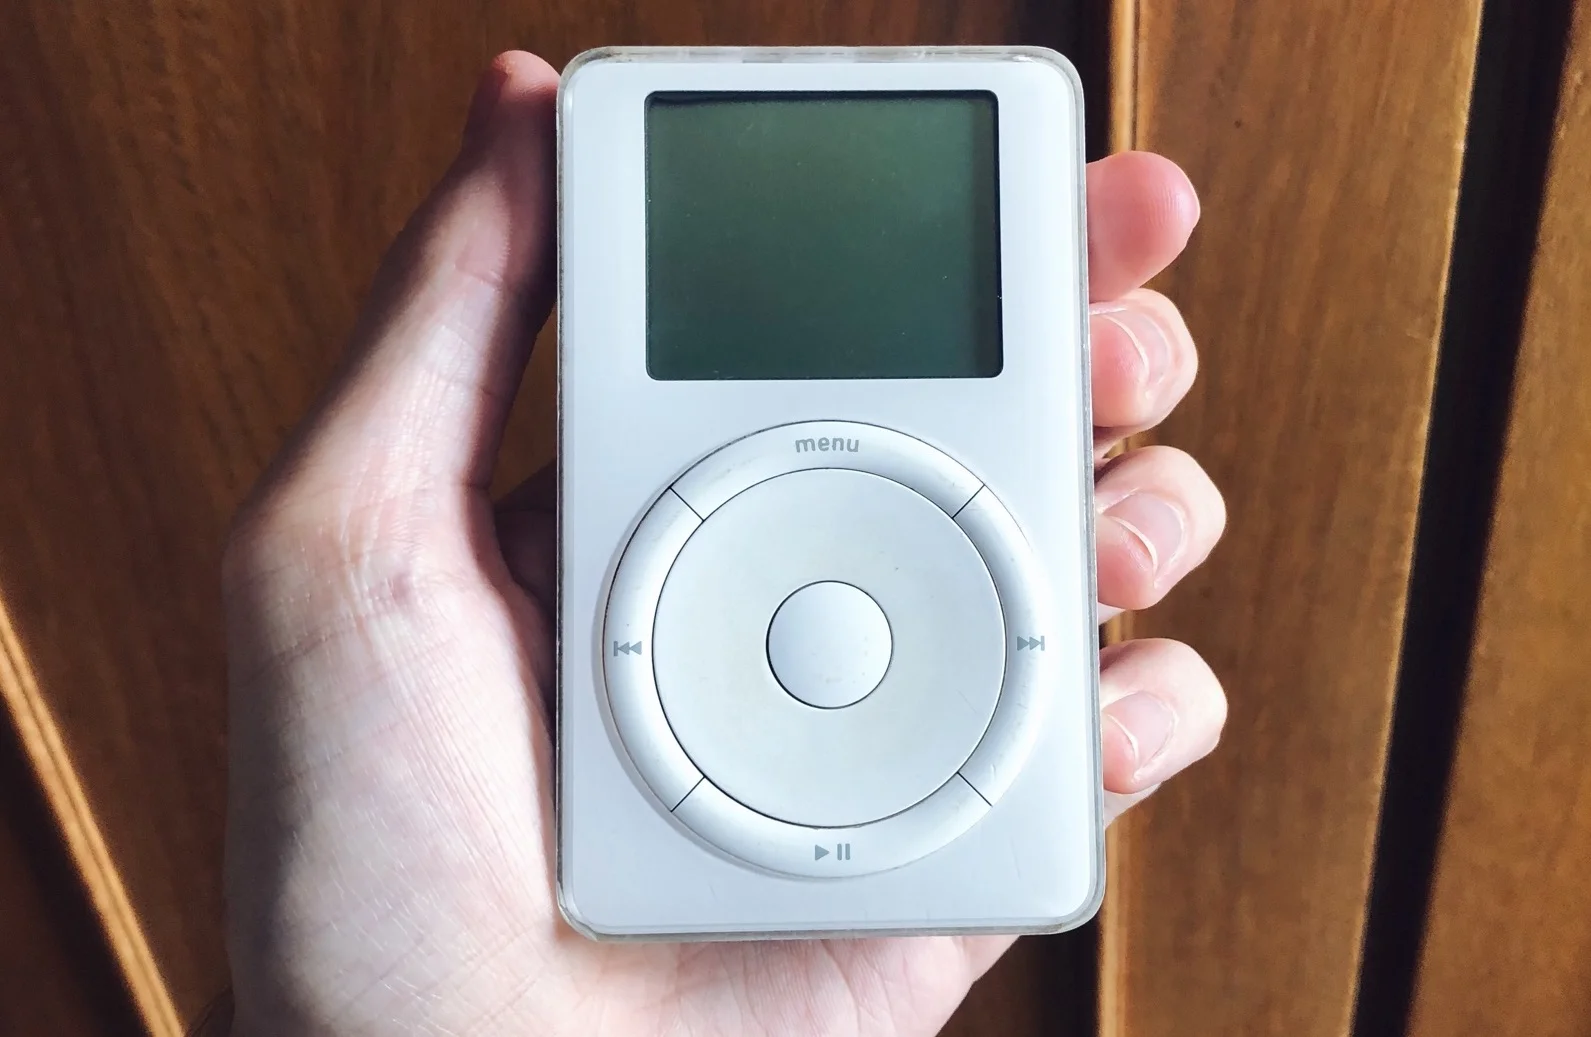 Стив Джобс представил первый iPod в 2001 году и это перевернуло мир музыки и технологий. На то время в плеере помещалось тысяча песен, а звук был достойным. Правда, у нас стали популярными АйПоды пятого поколения, выпускаемые с 2007 года. У них были уже разные объемы памяти (например, у меня был на 80 ГБ и это было очень круто), стеклянная передняя крышка и утопленное колесико. А еще это последний iPod с нормальным звуком. 